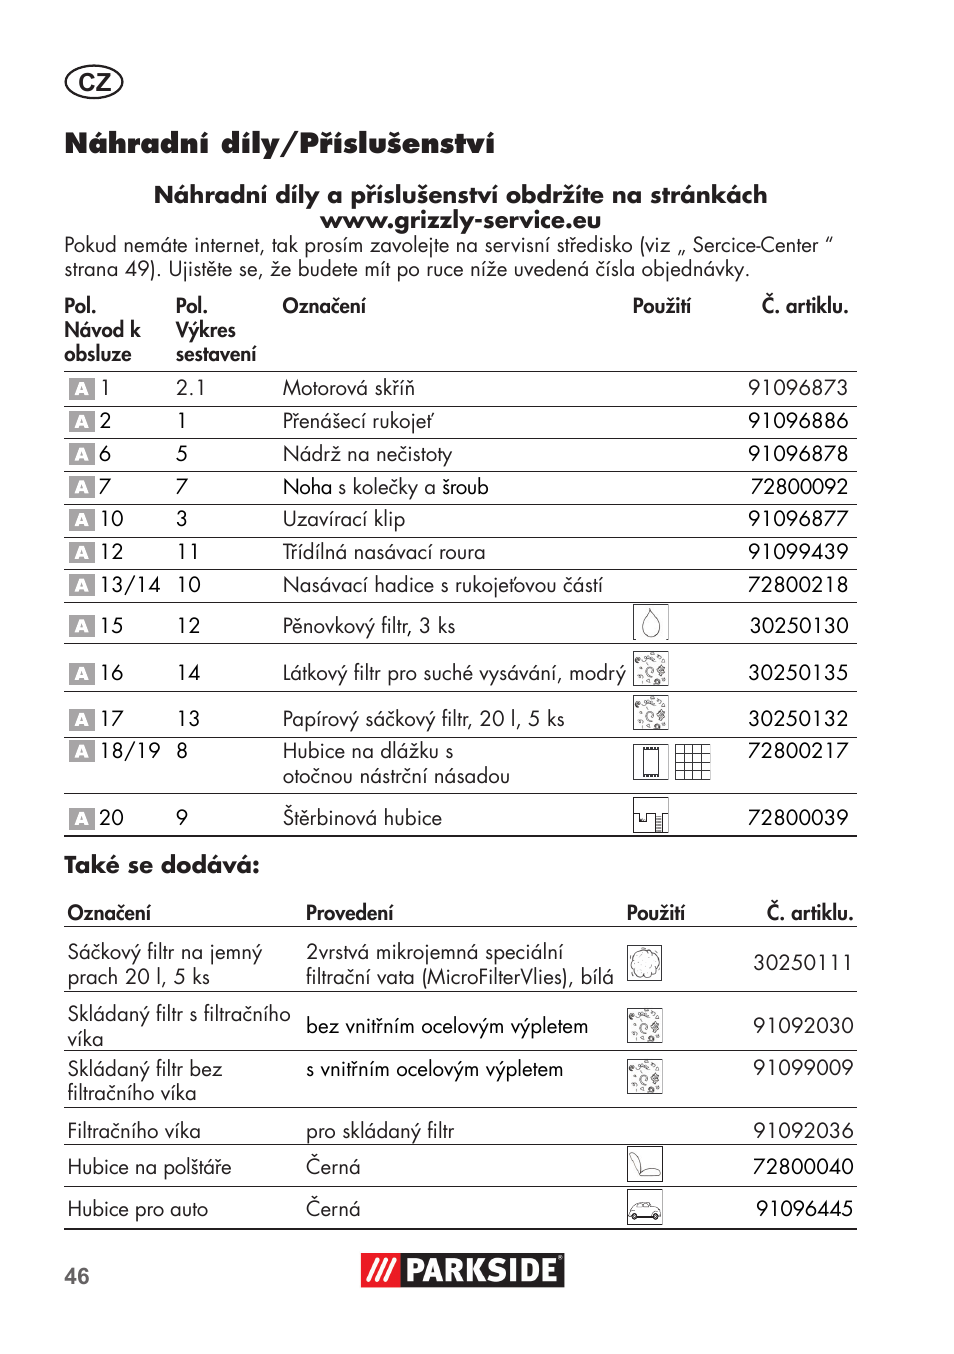 Náhradní díly/příslušenství | Parkside PNTS 1300 C3 User Manual | Page 46 /  68